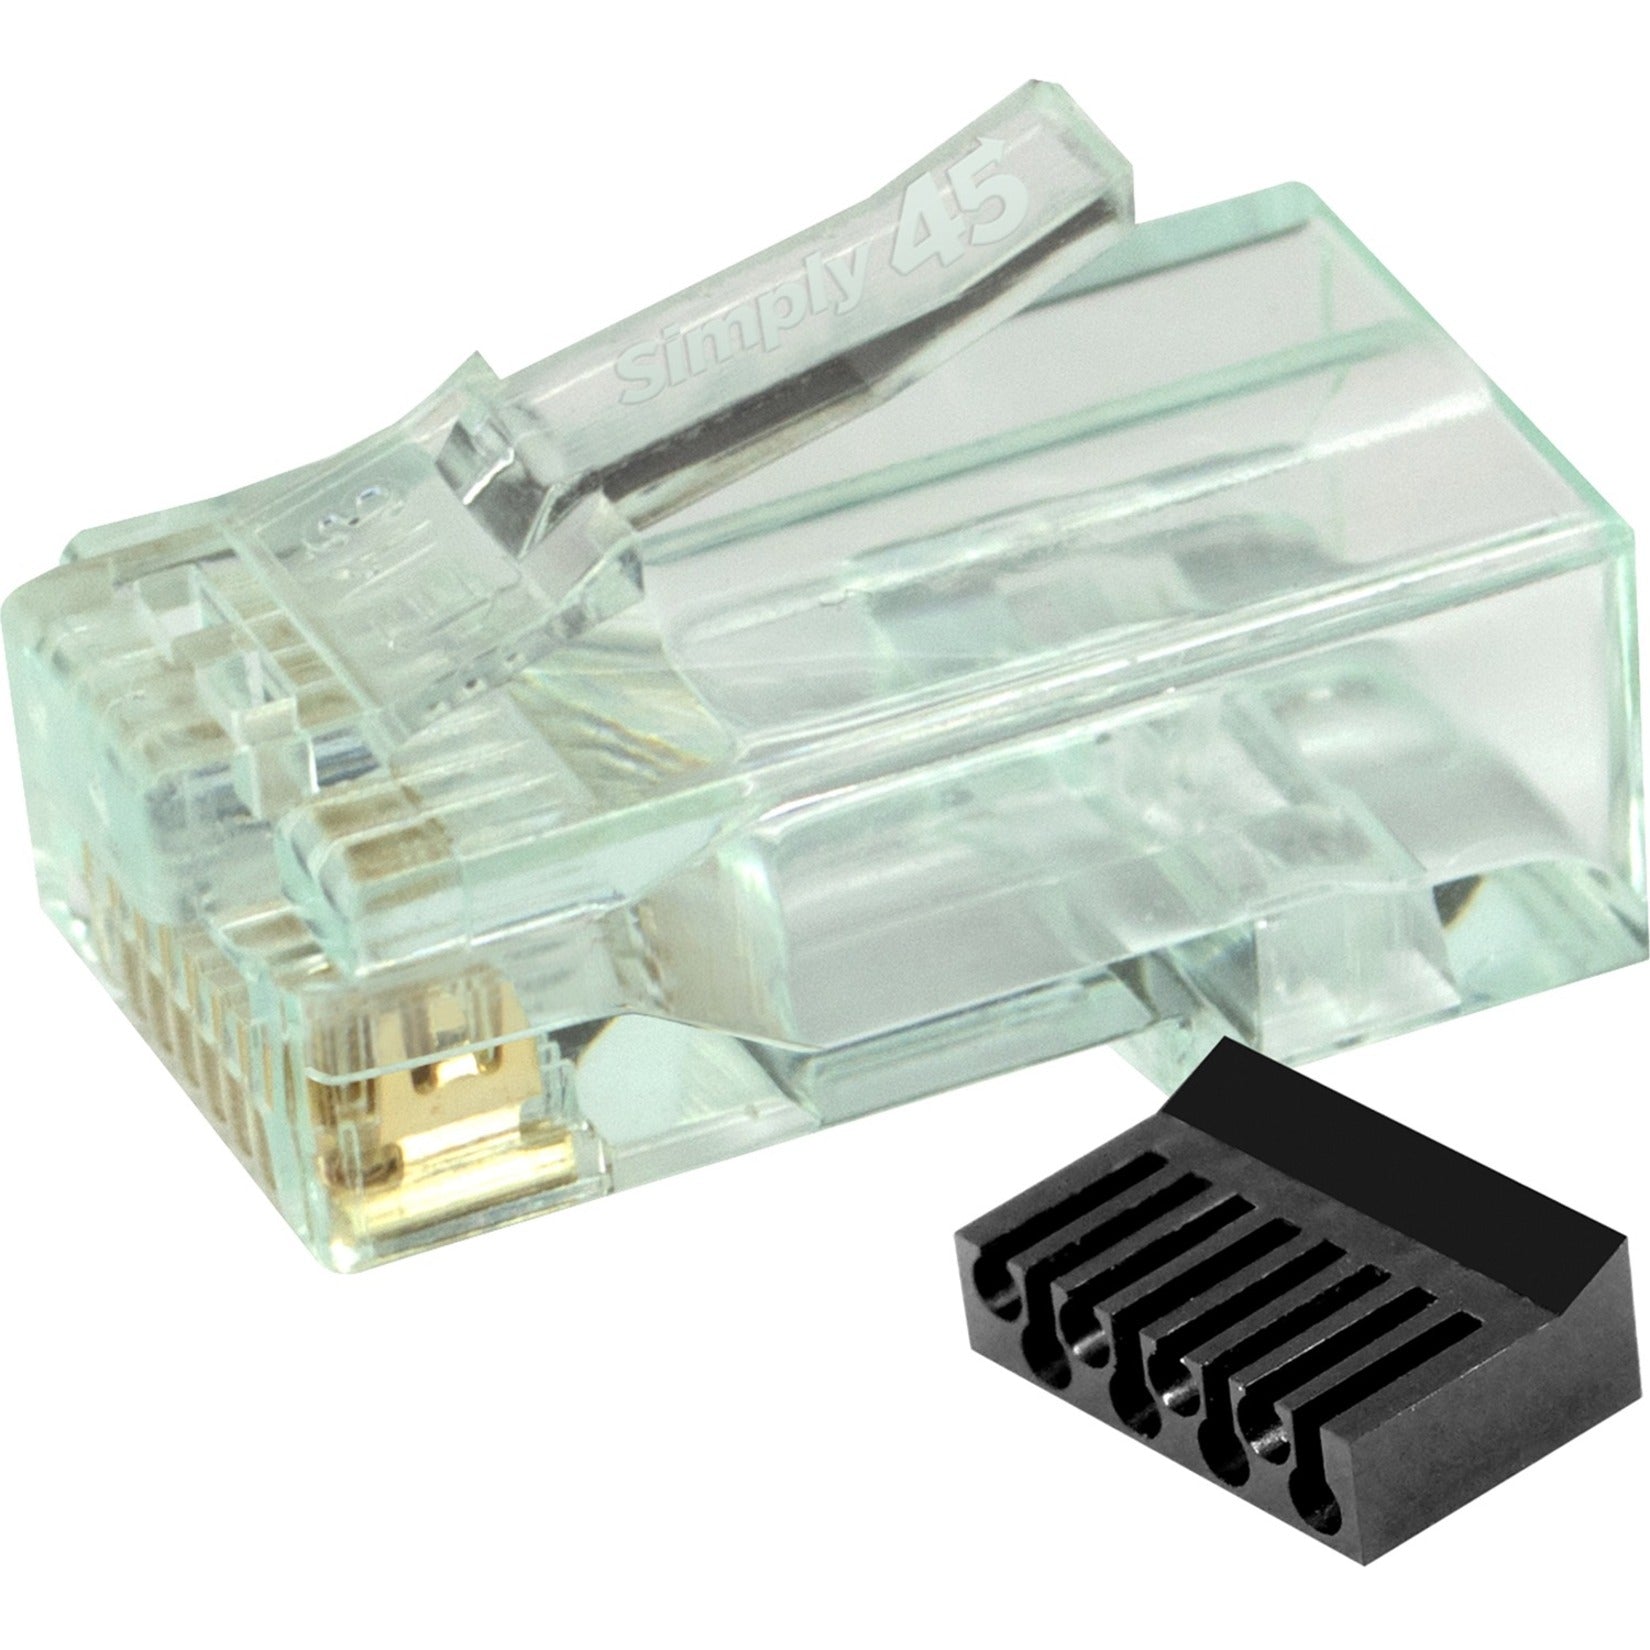 SIMPLY45 S45-1100 Cat6 Ungeschirmter Netzwerkstecker mit BarS45 Grüner Farbton lebenslange Garantie TAA-konform